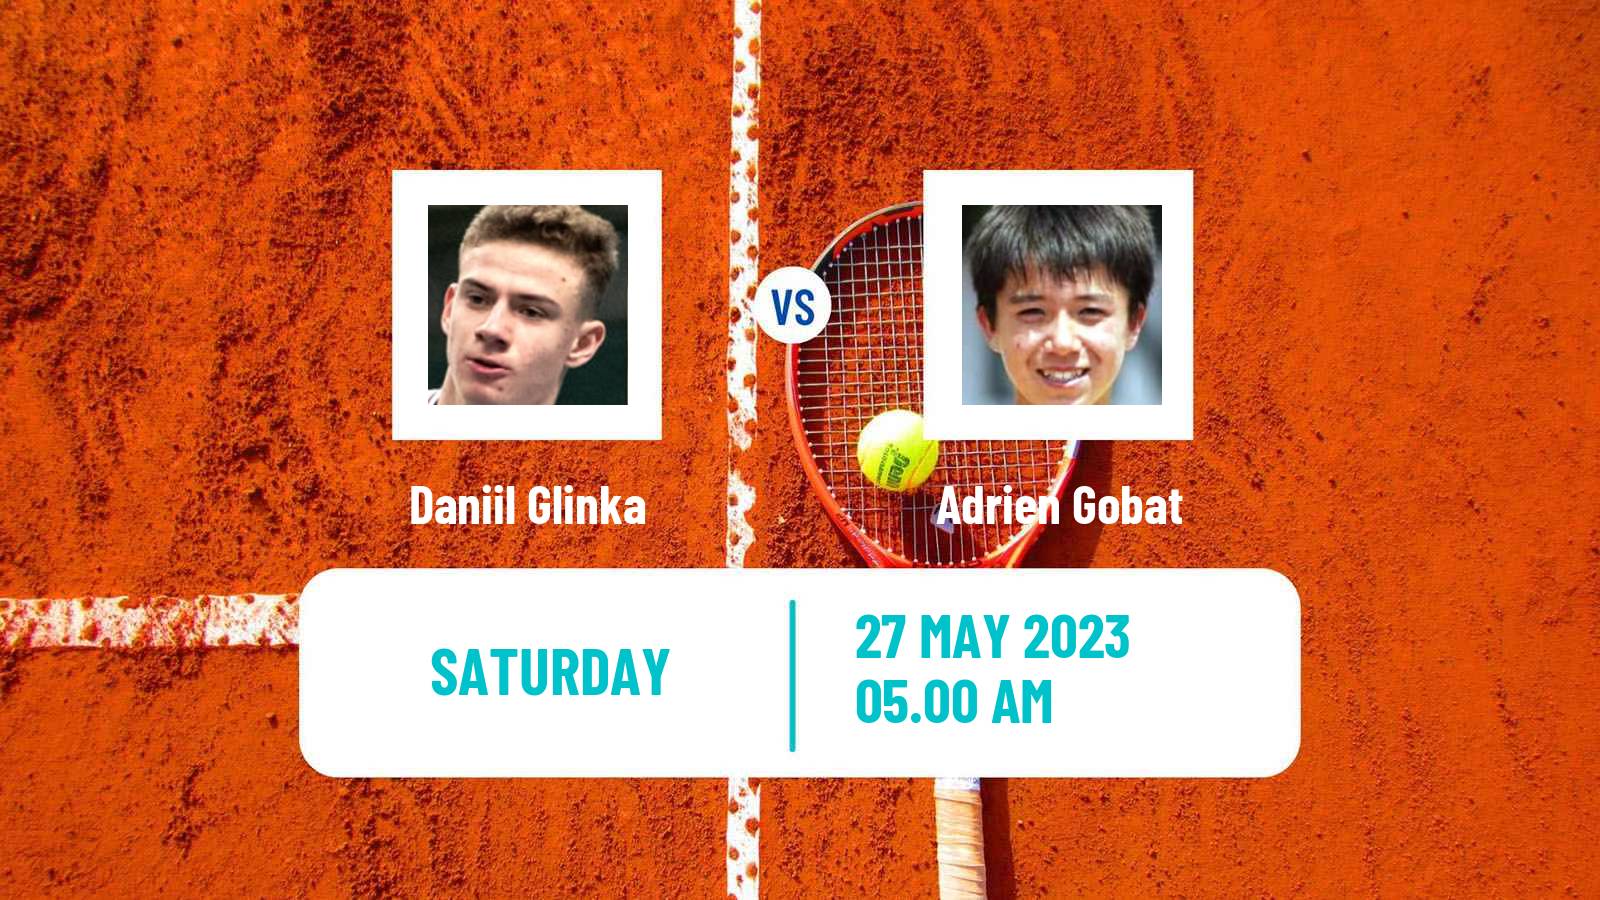 Tennis ITF M15 Monastir 21 Men Daniil Glinka - Adrien Gobat